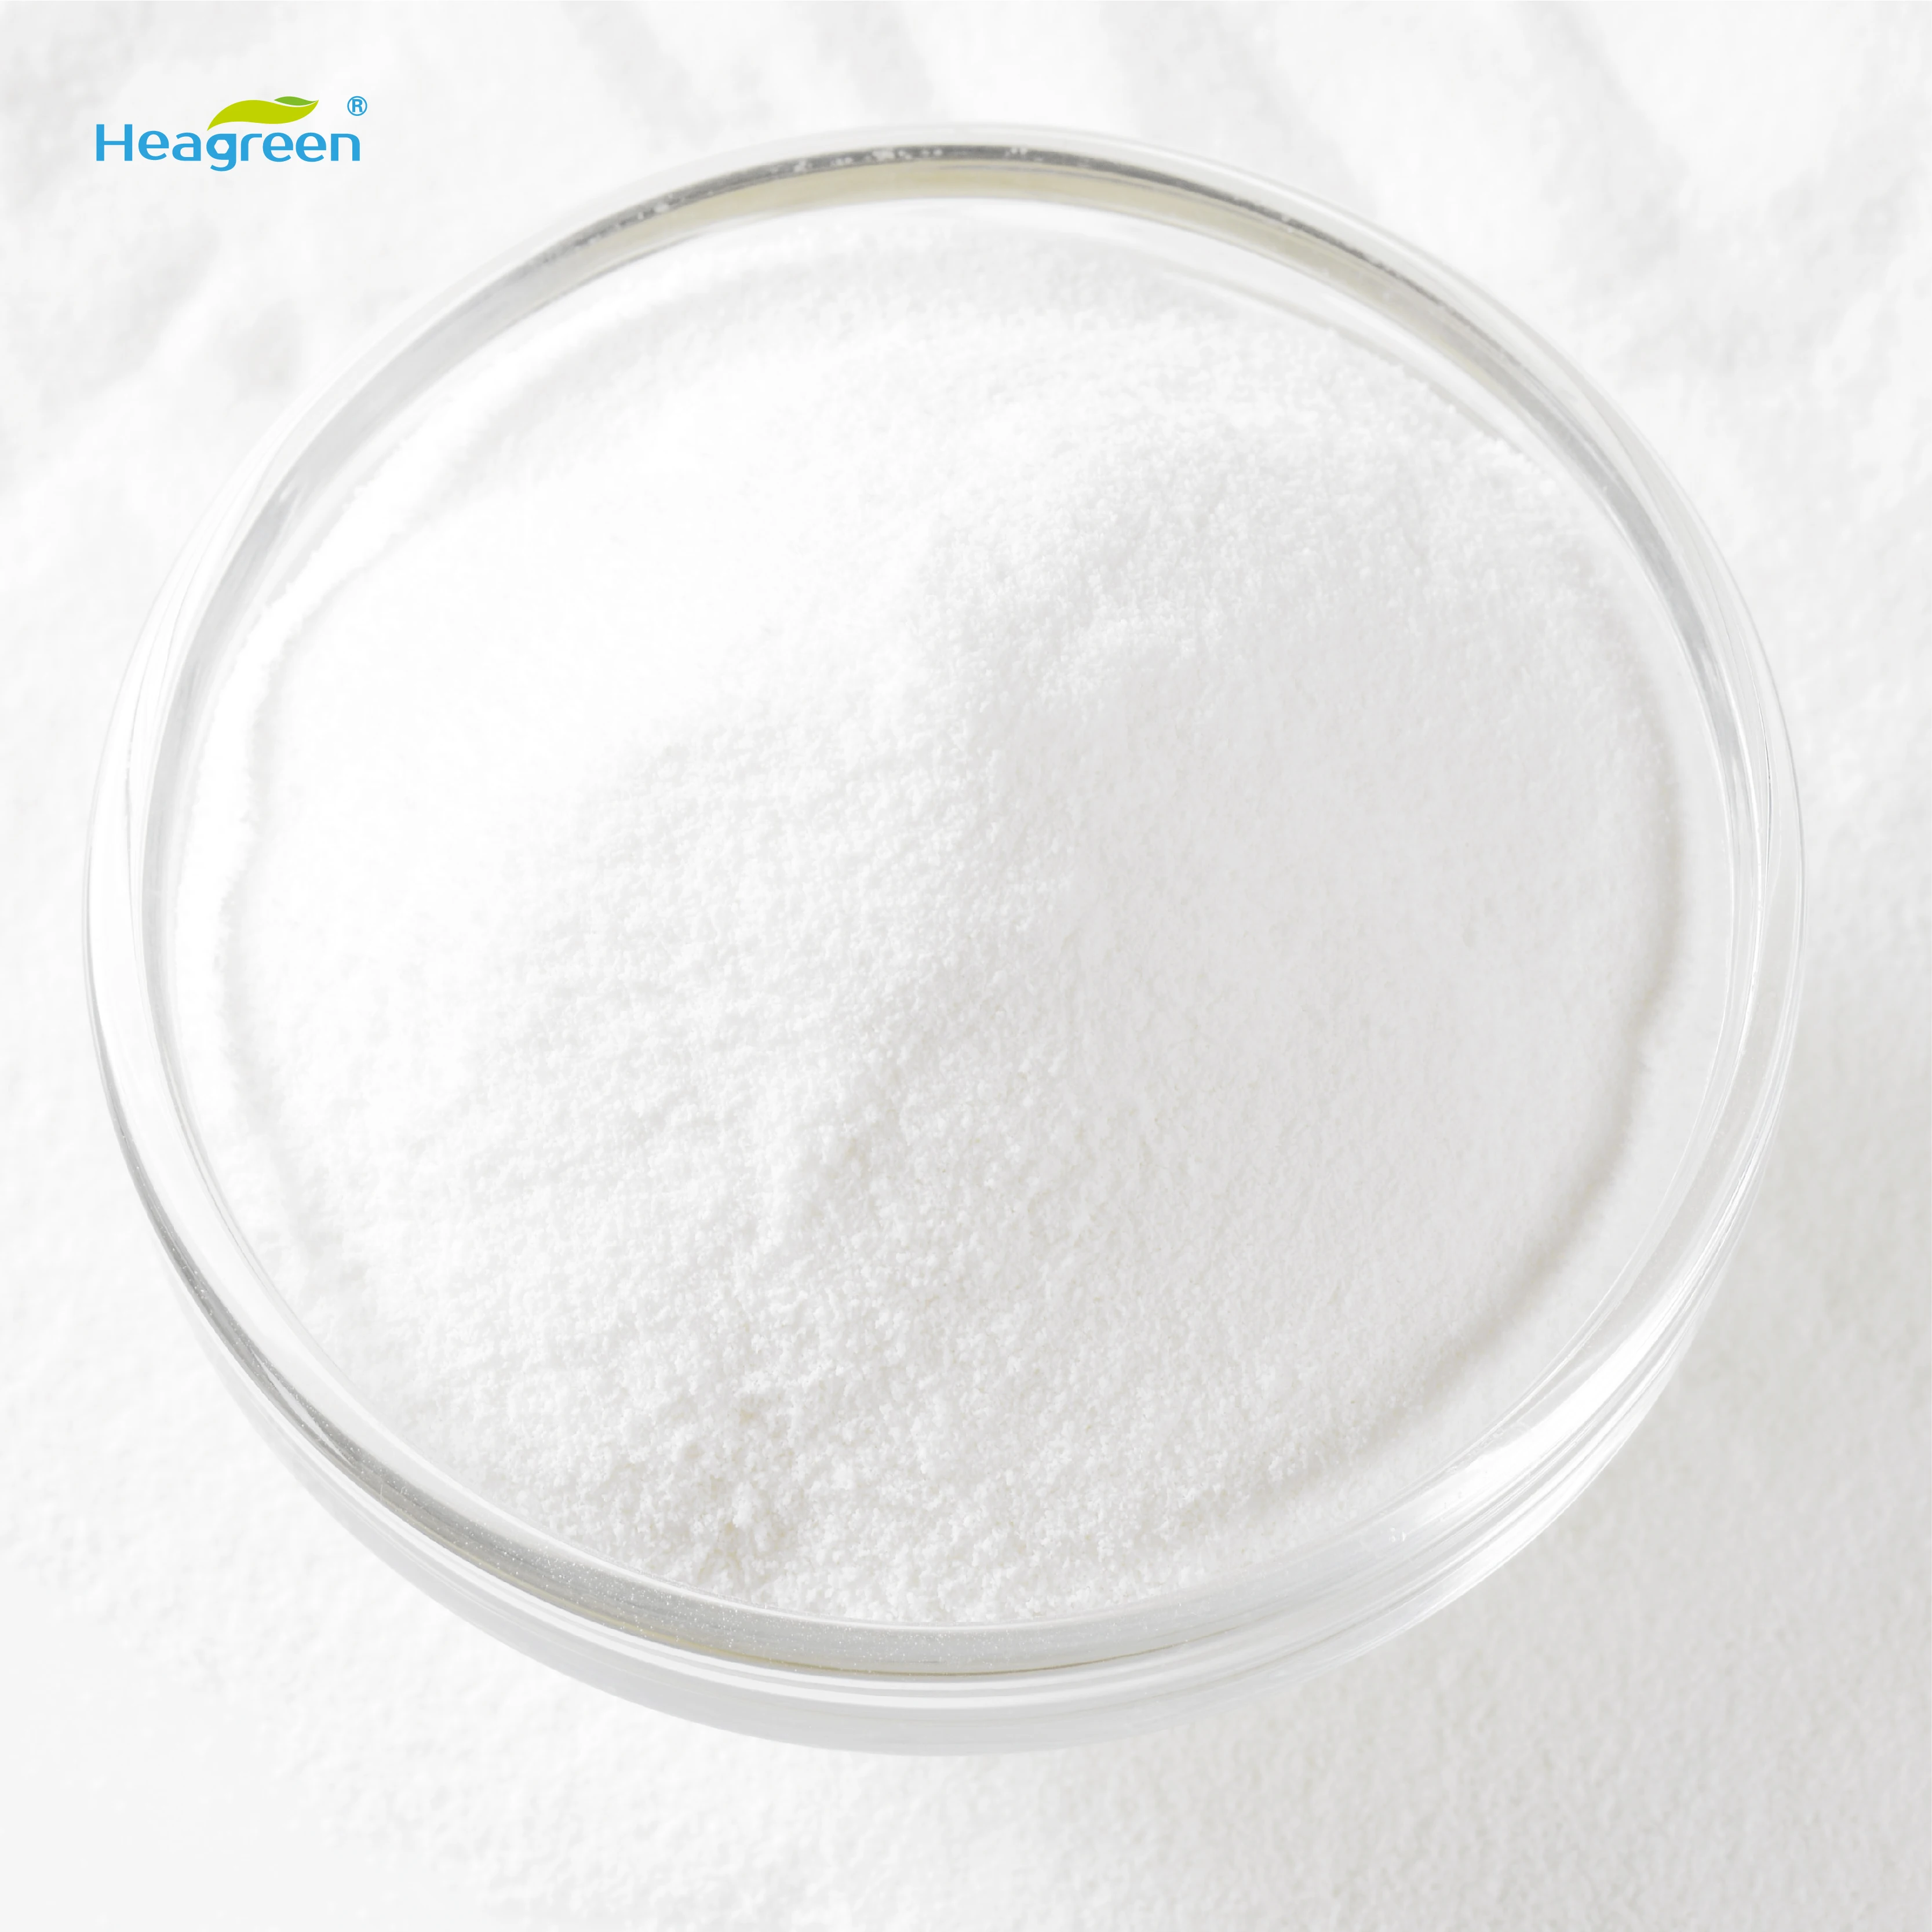 Food ingredients powder xylo-oligosaccharide xos